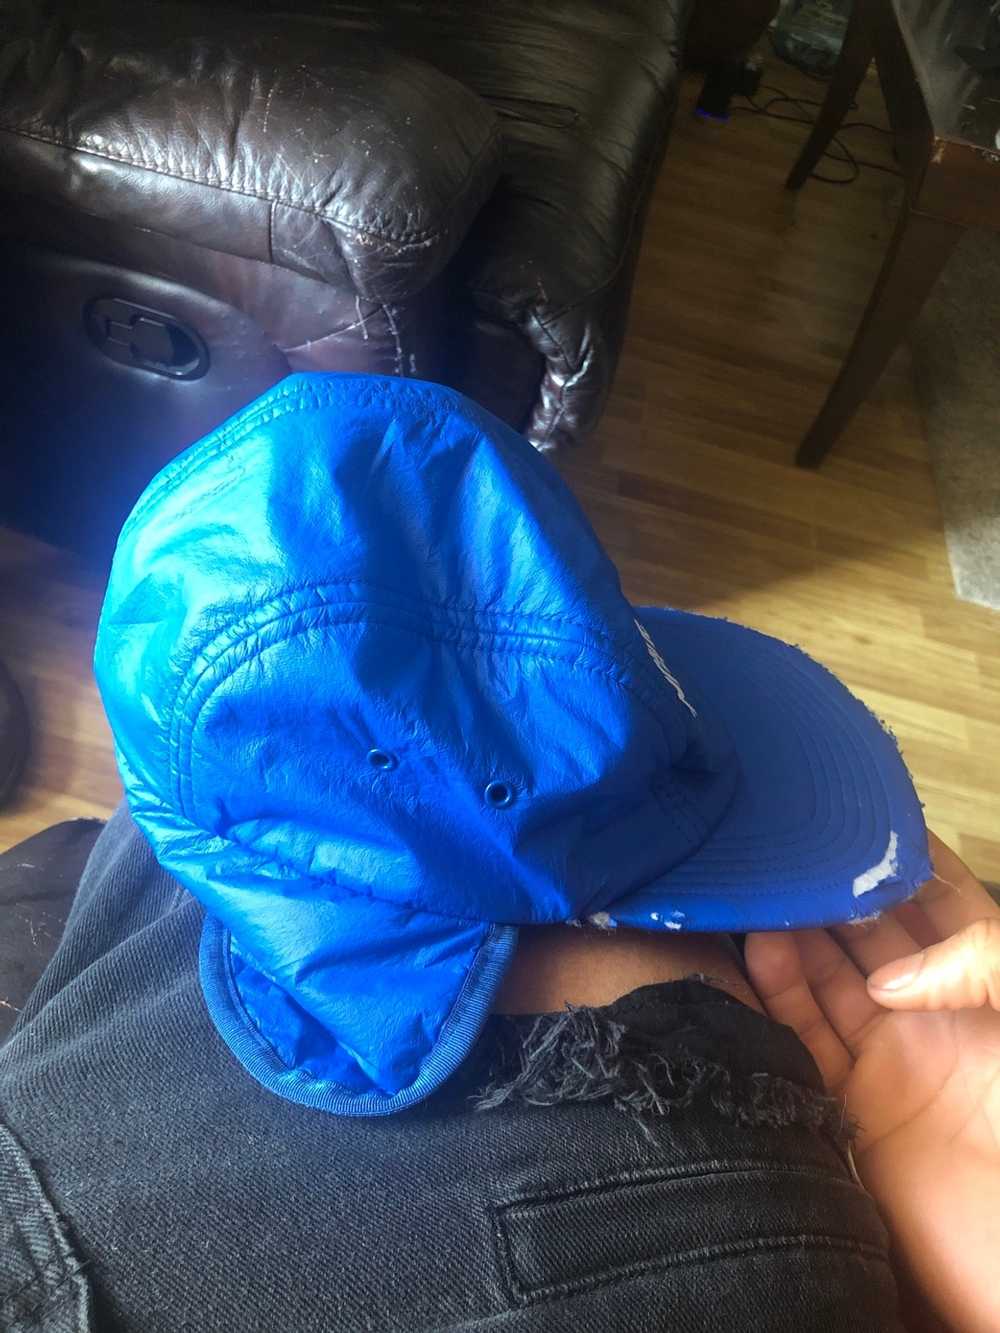 Supreme Blue Hat - Gem